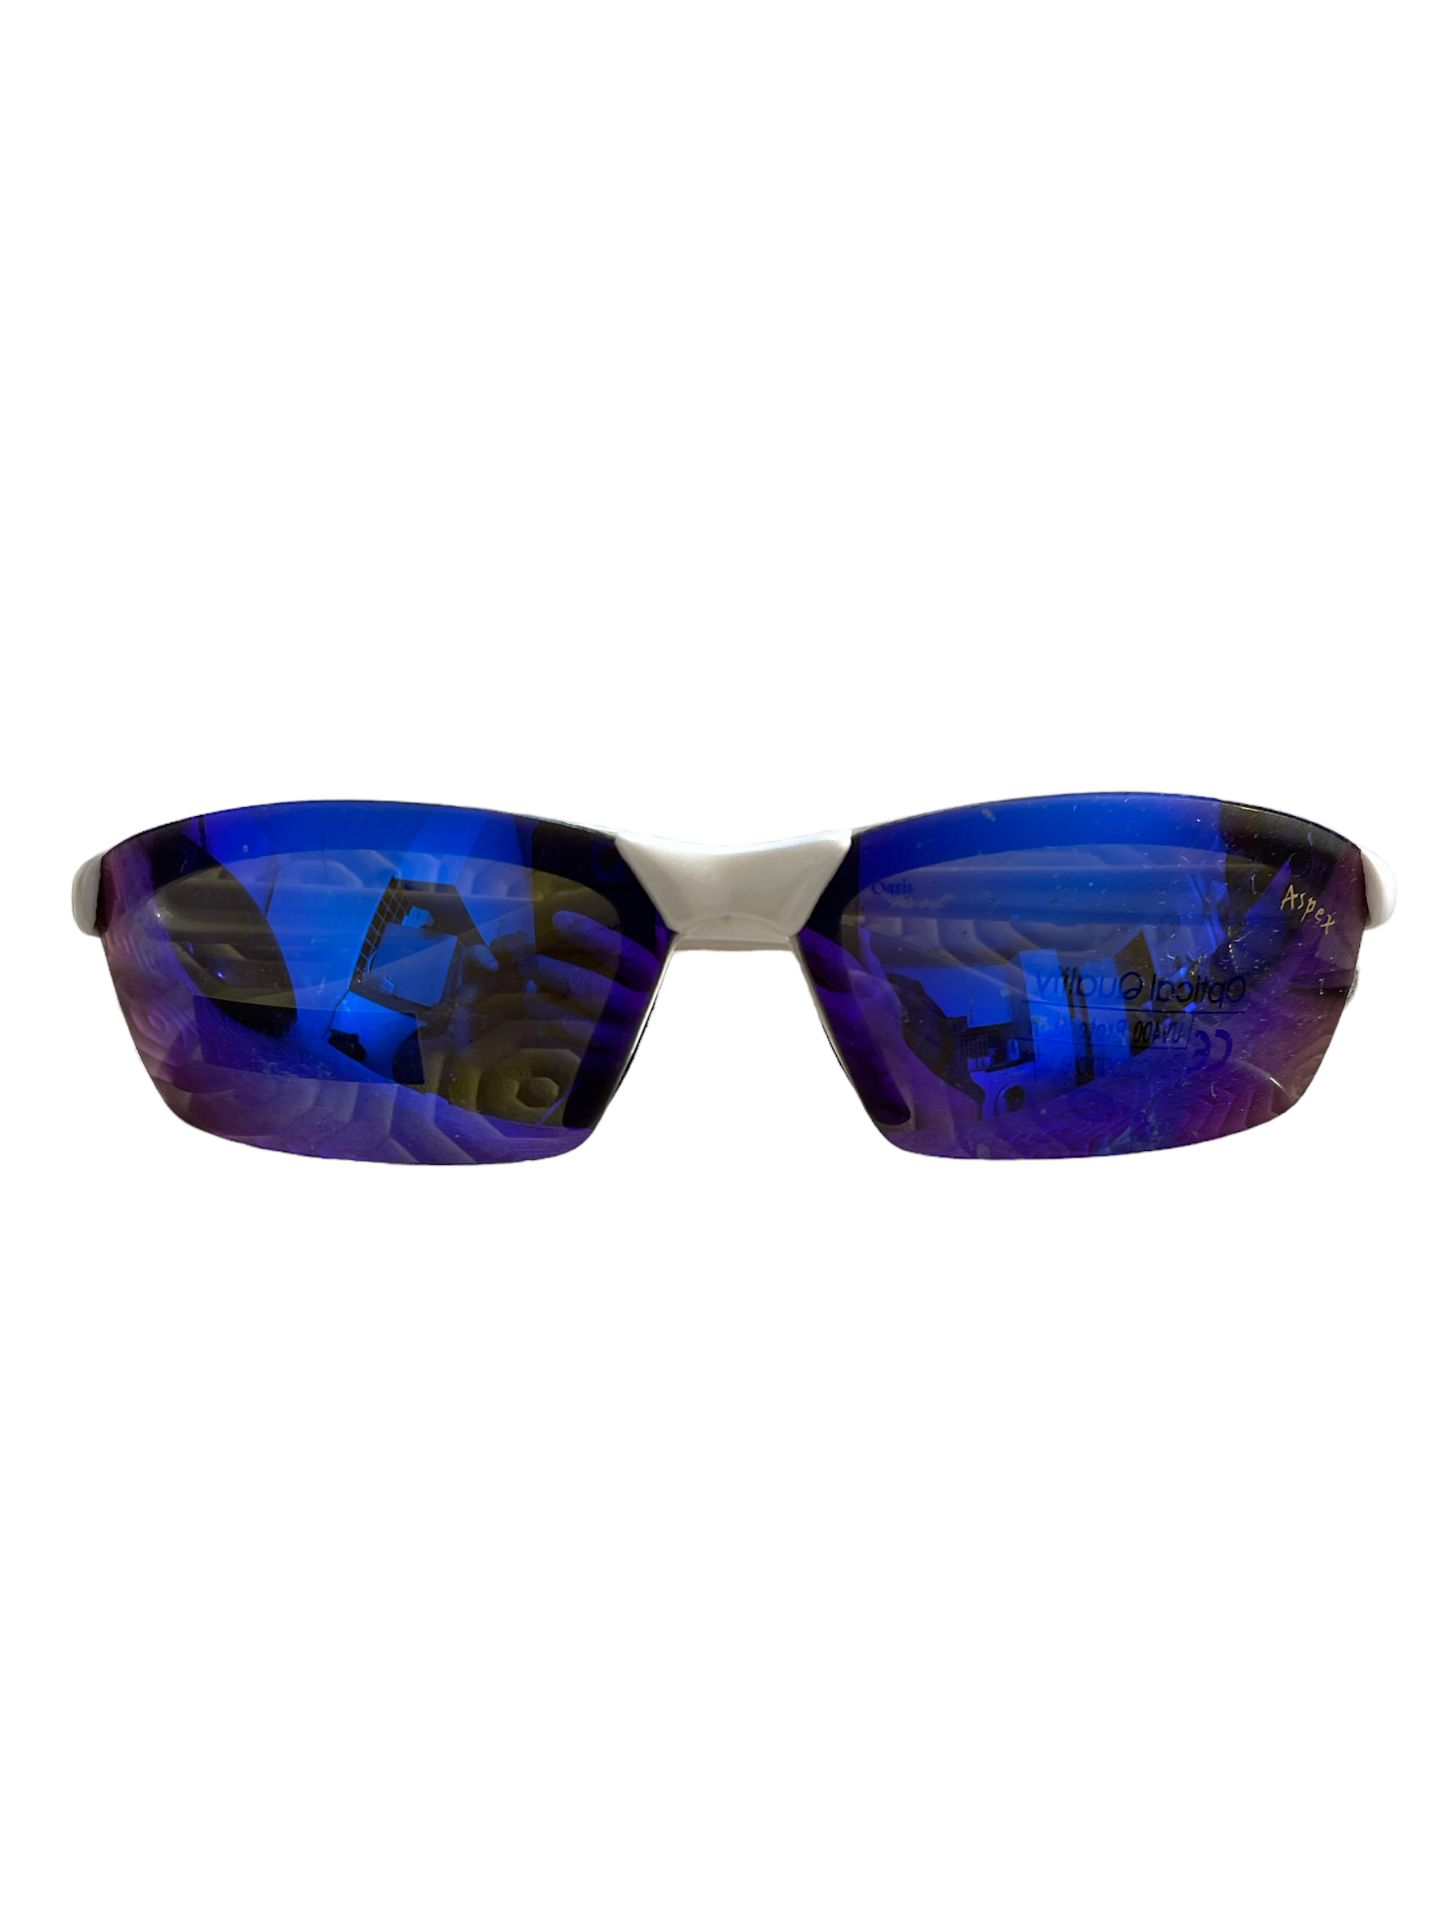 Apex sunglasses blue.